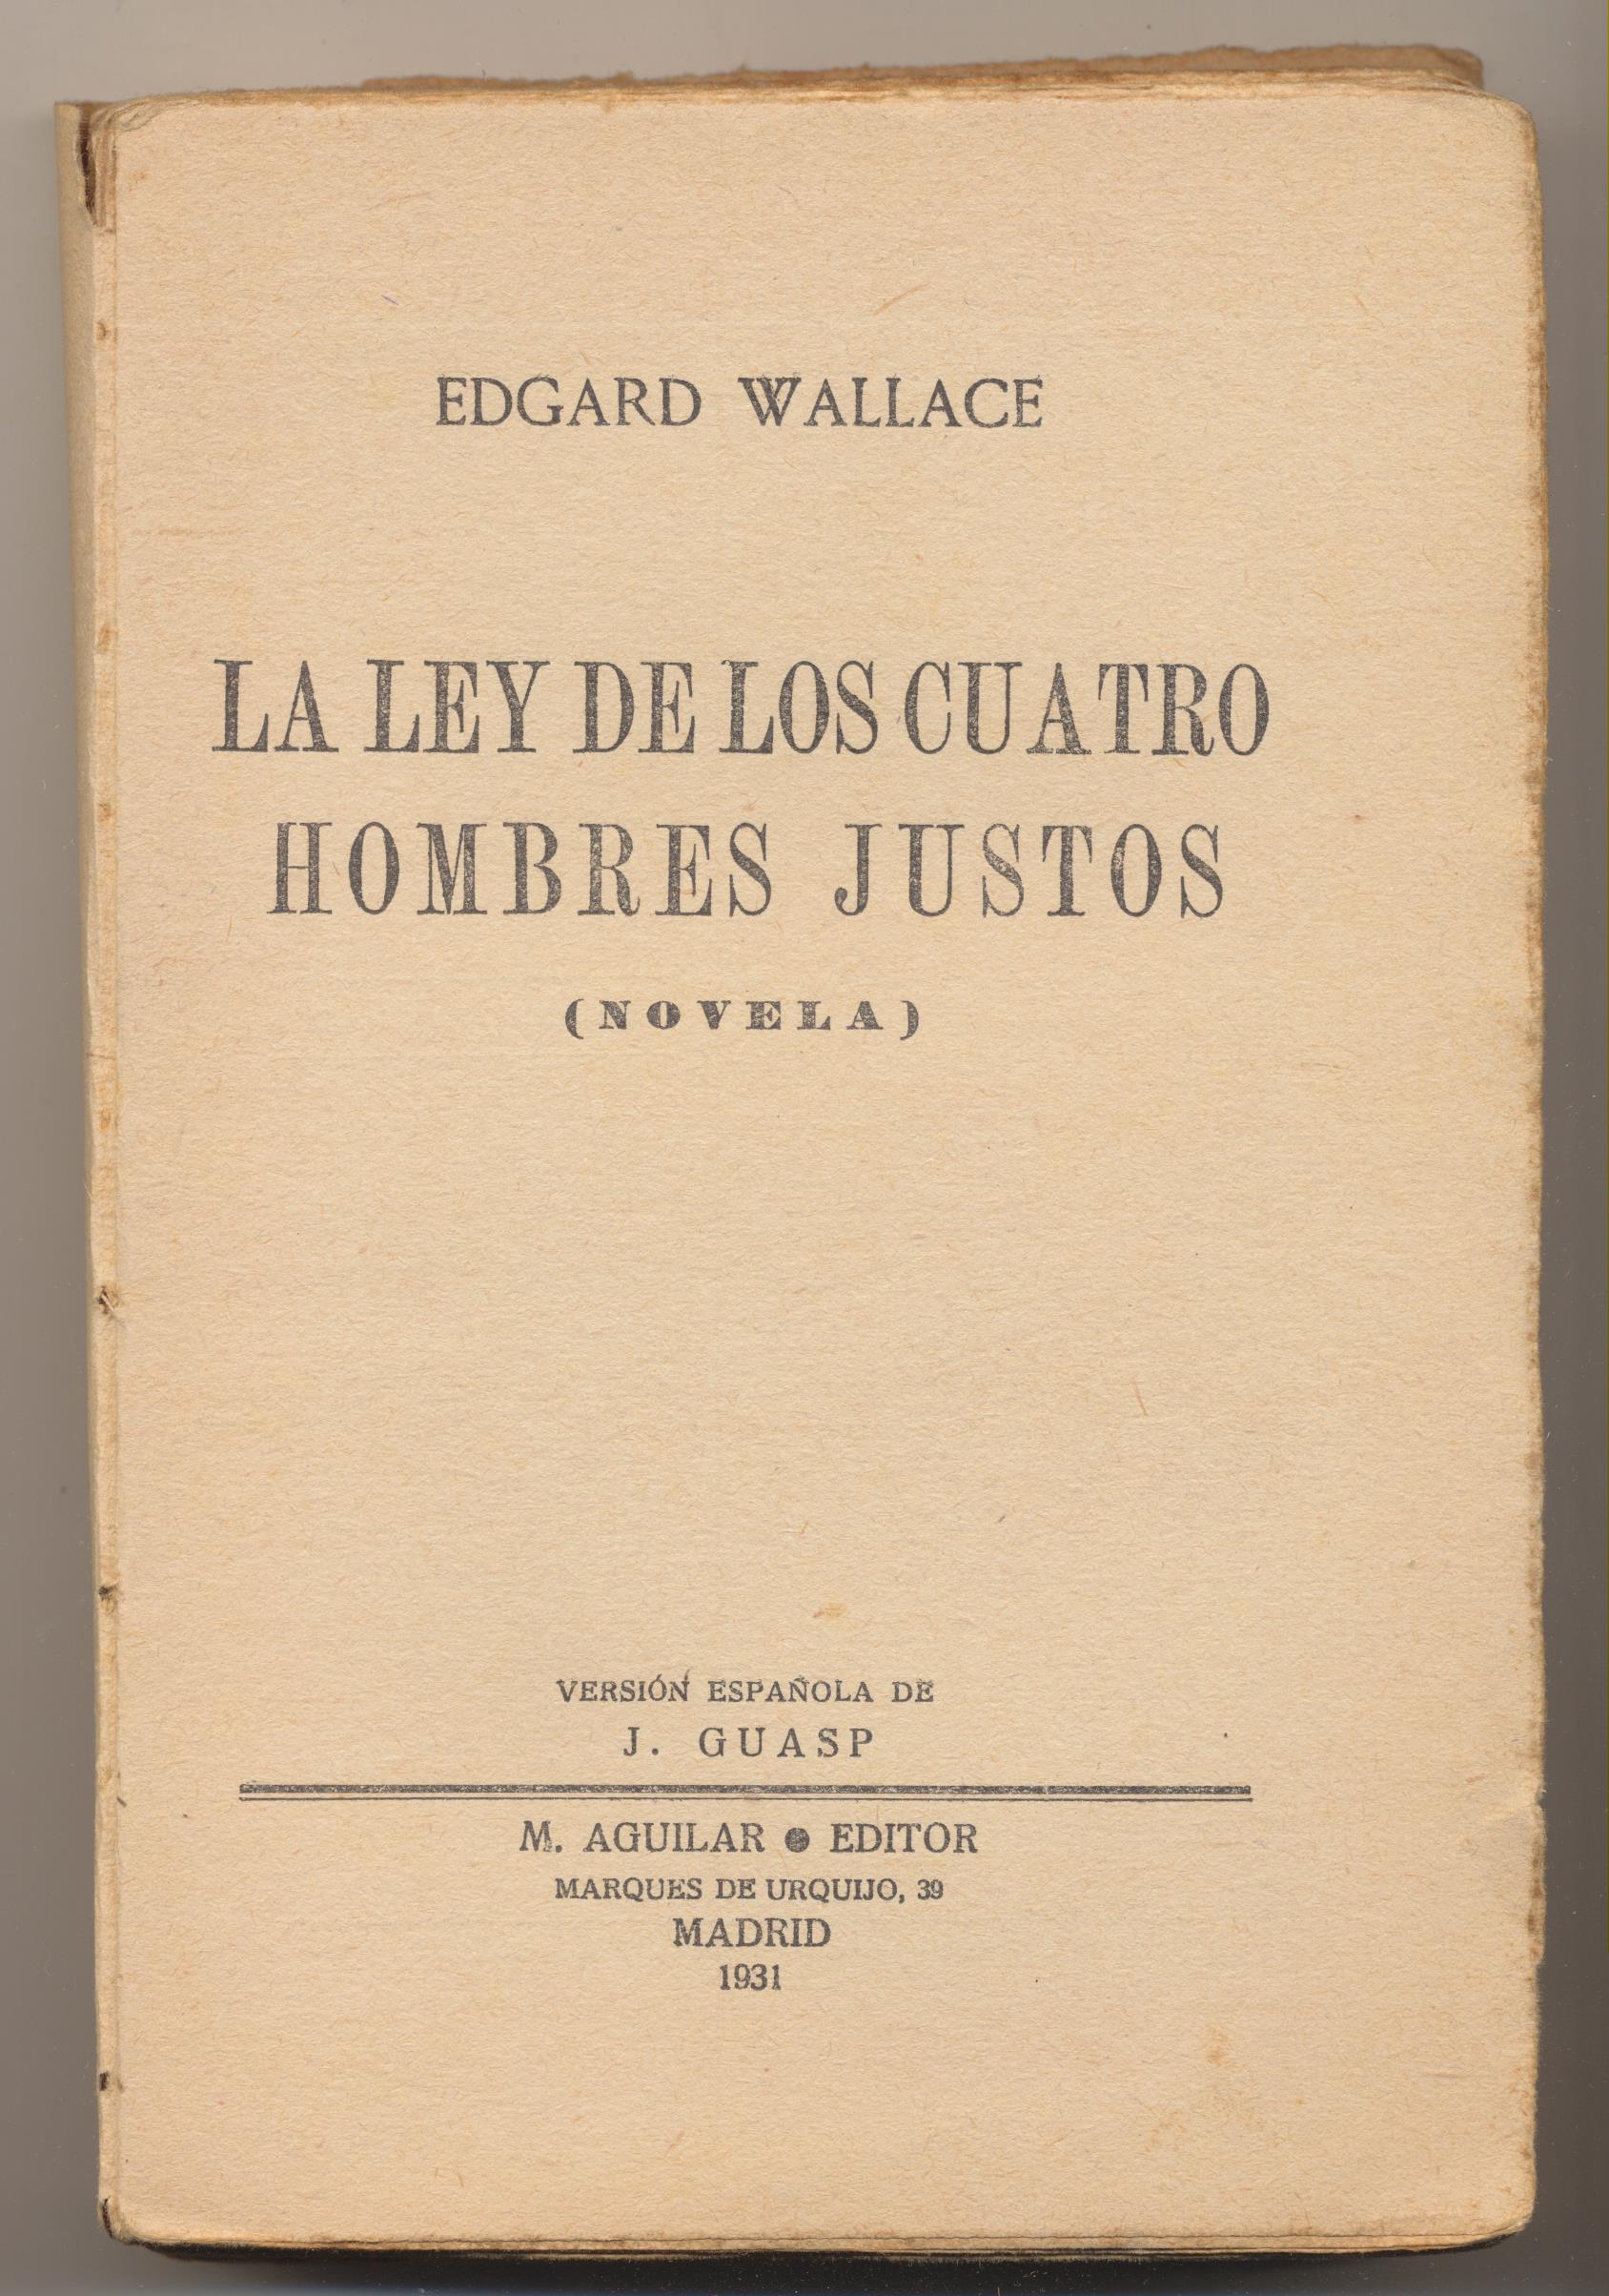 Edgar Wallace. La Ley de los cuatro hombres justos. Editorial Aguilar 1931